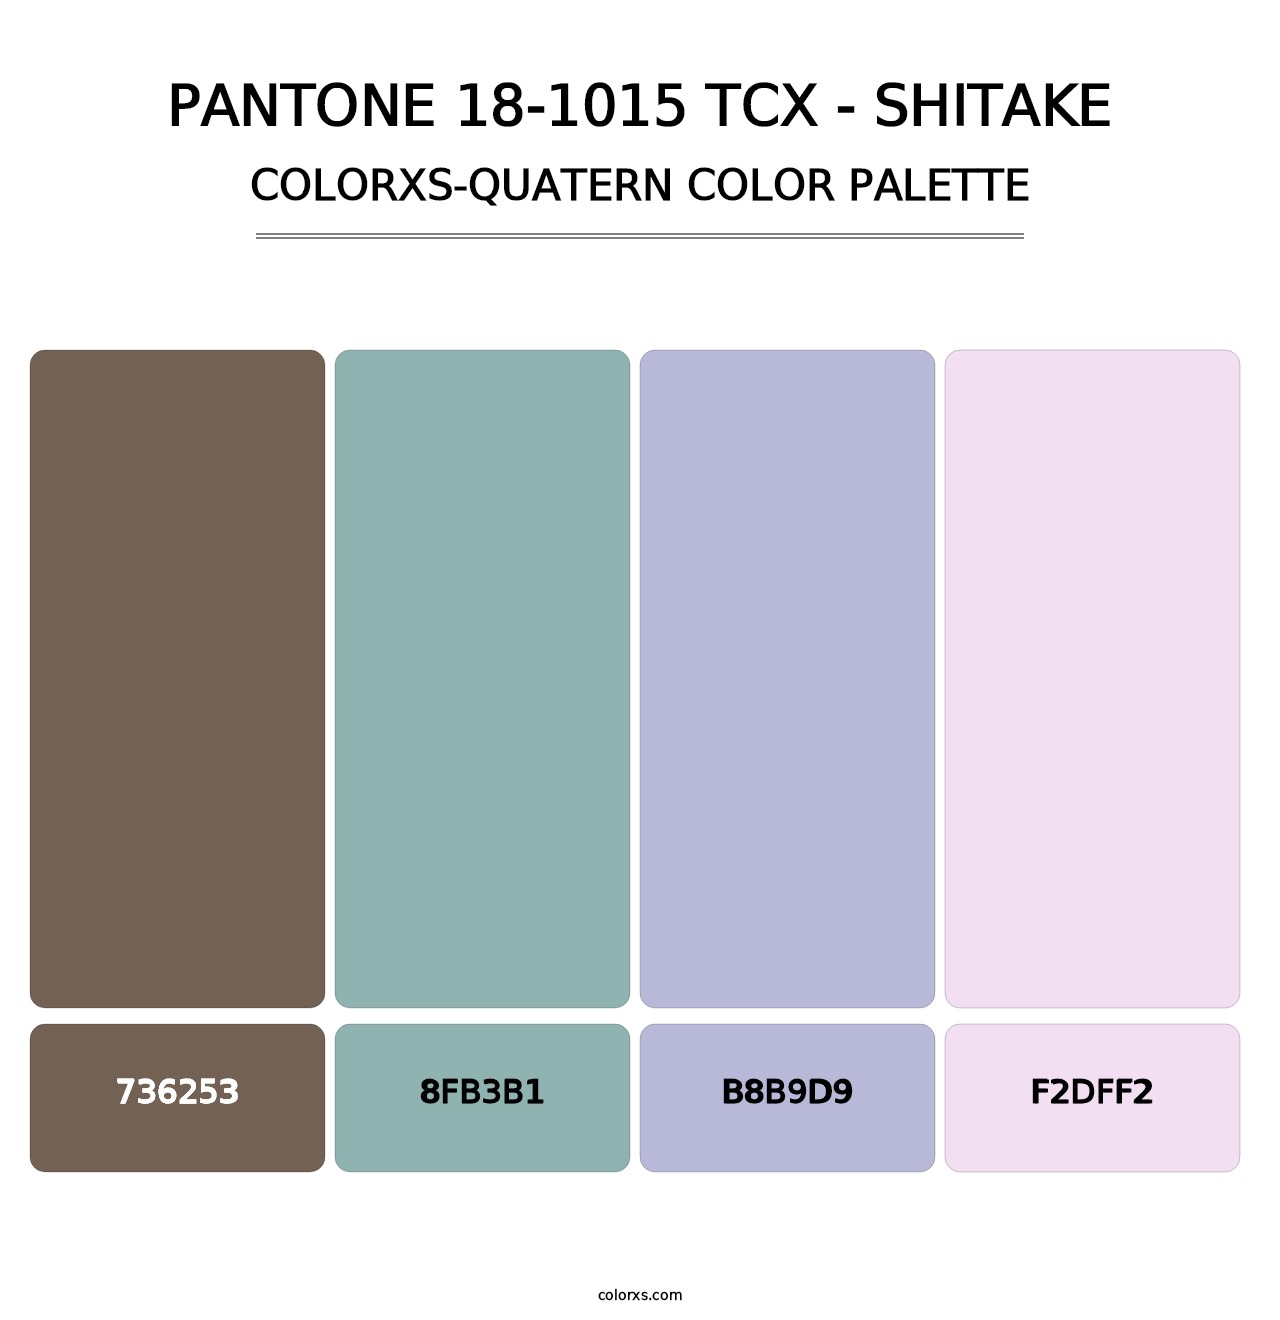 PANTONE 18-1015 TCX - Shitake - Colorxs Quatern Palette